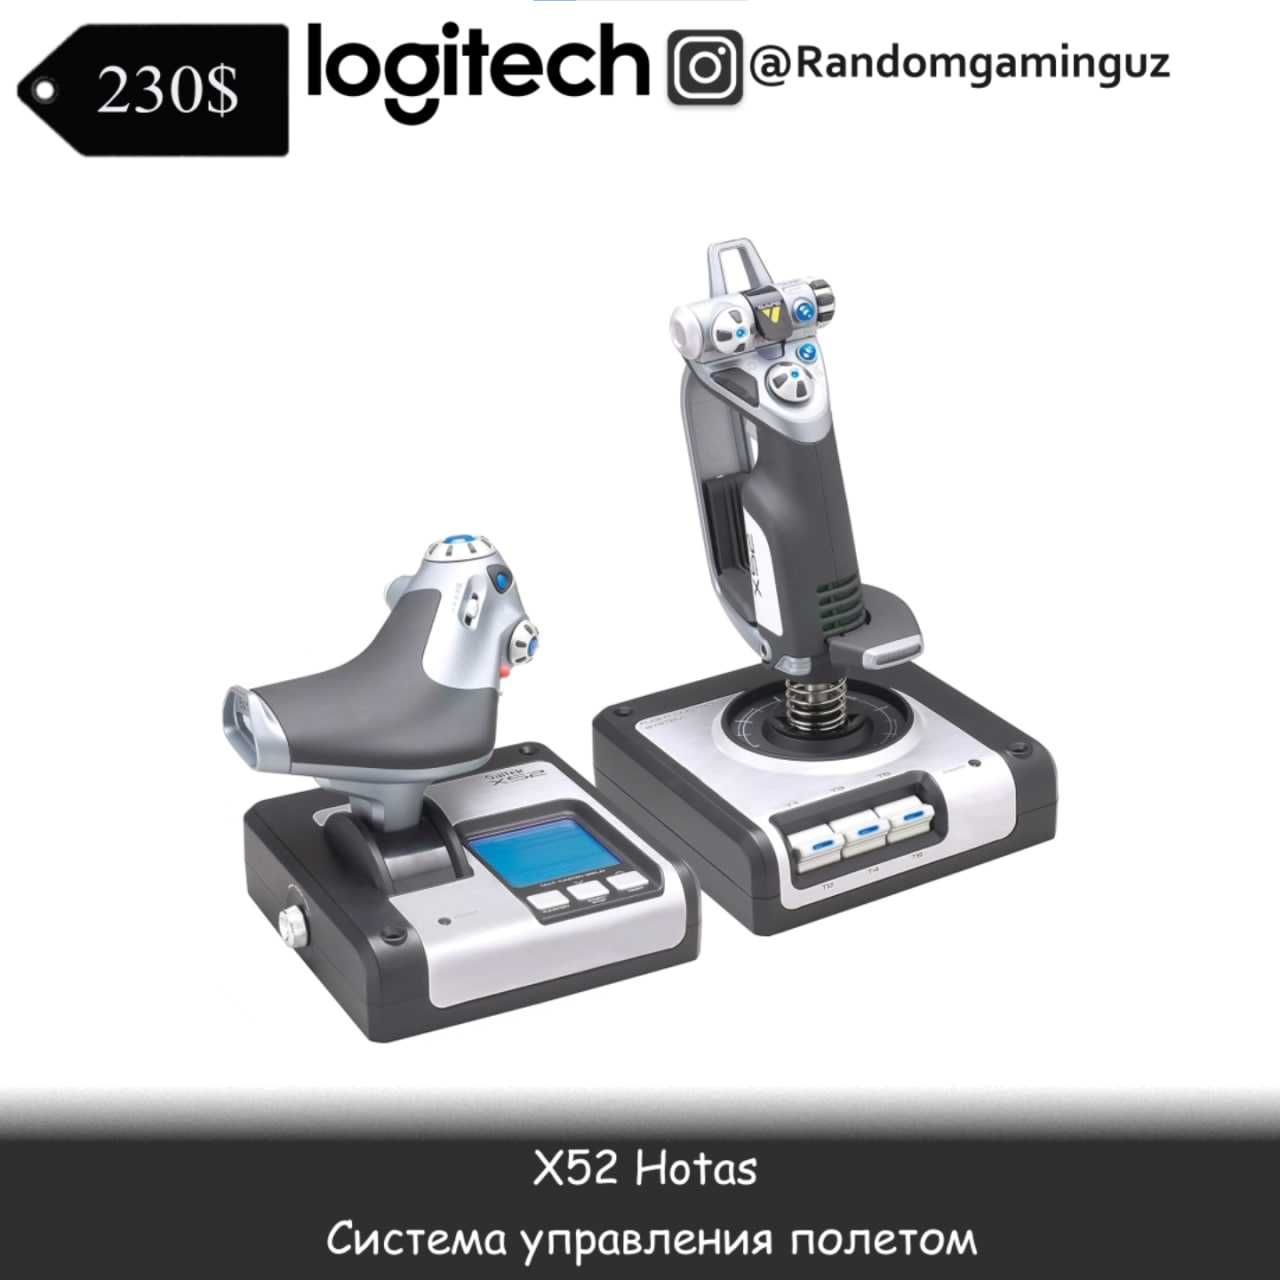 Джойстик Logitech X52 Hotas